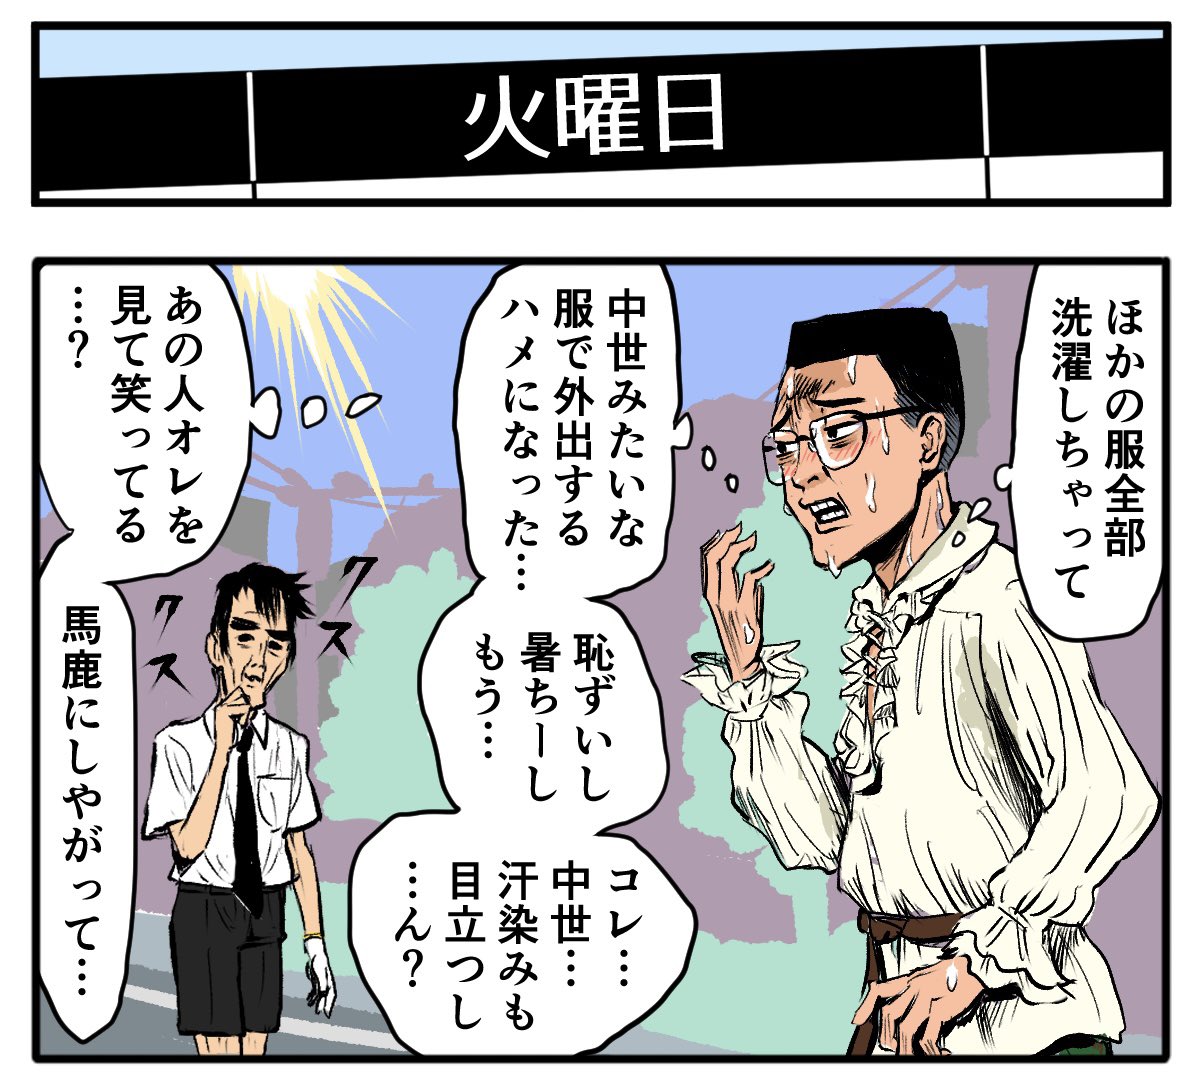 よっ!

【4コマ漫画】火曜日 | オモコロ 
https://t.co/Ys11CStPMA 